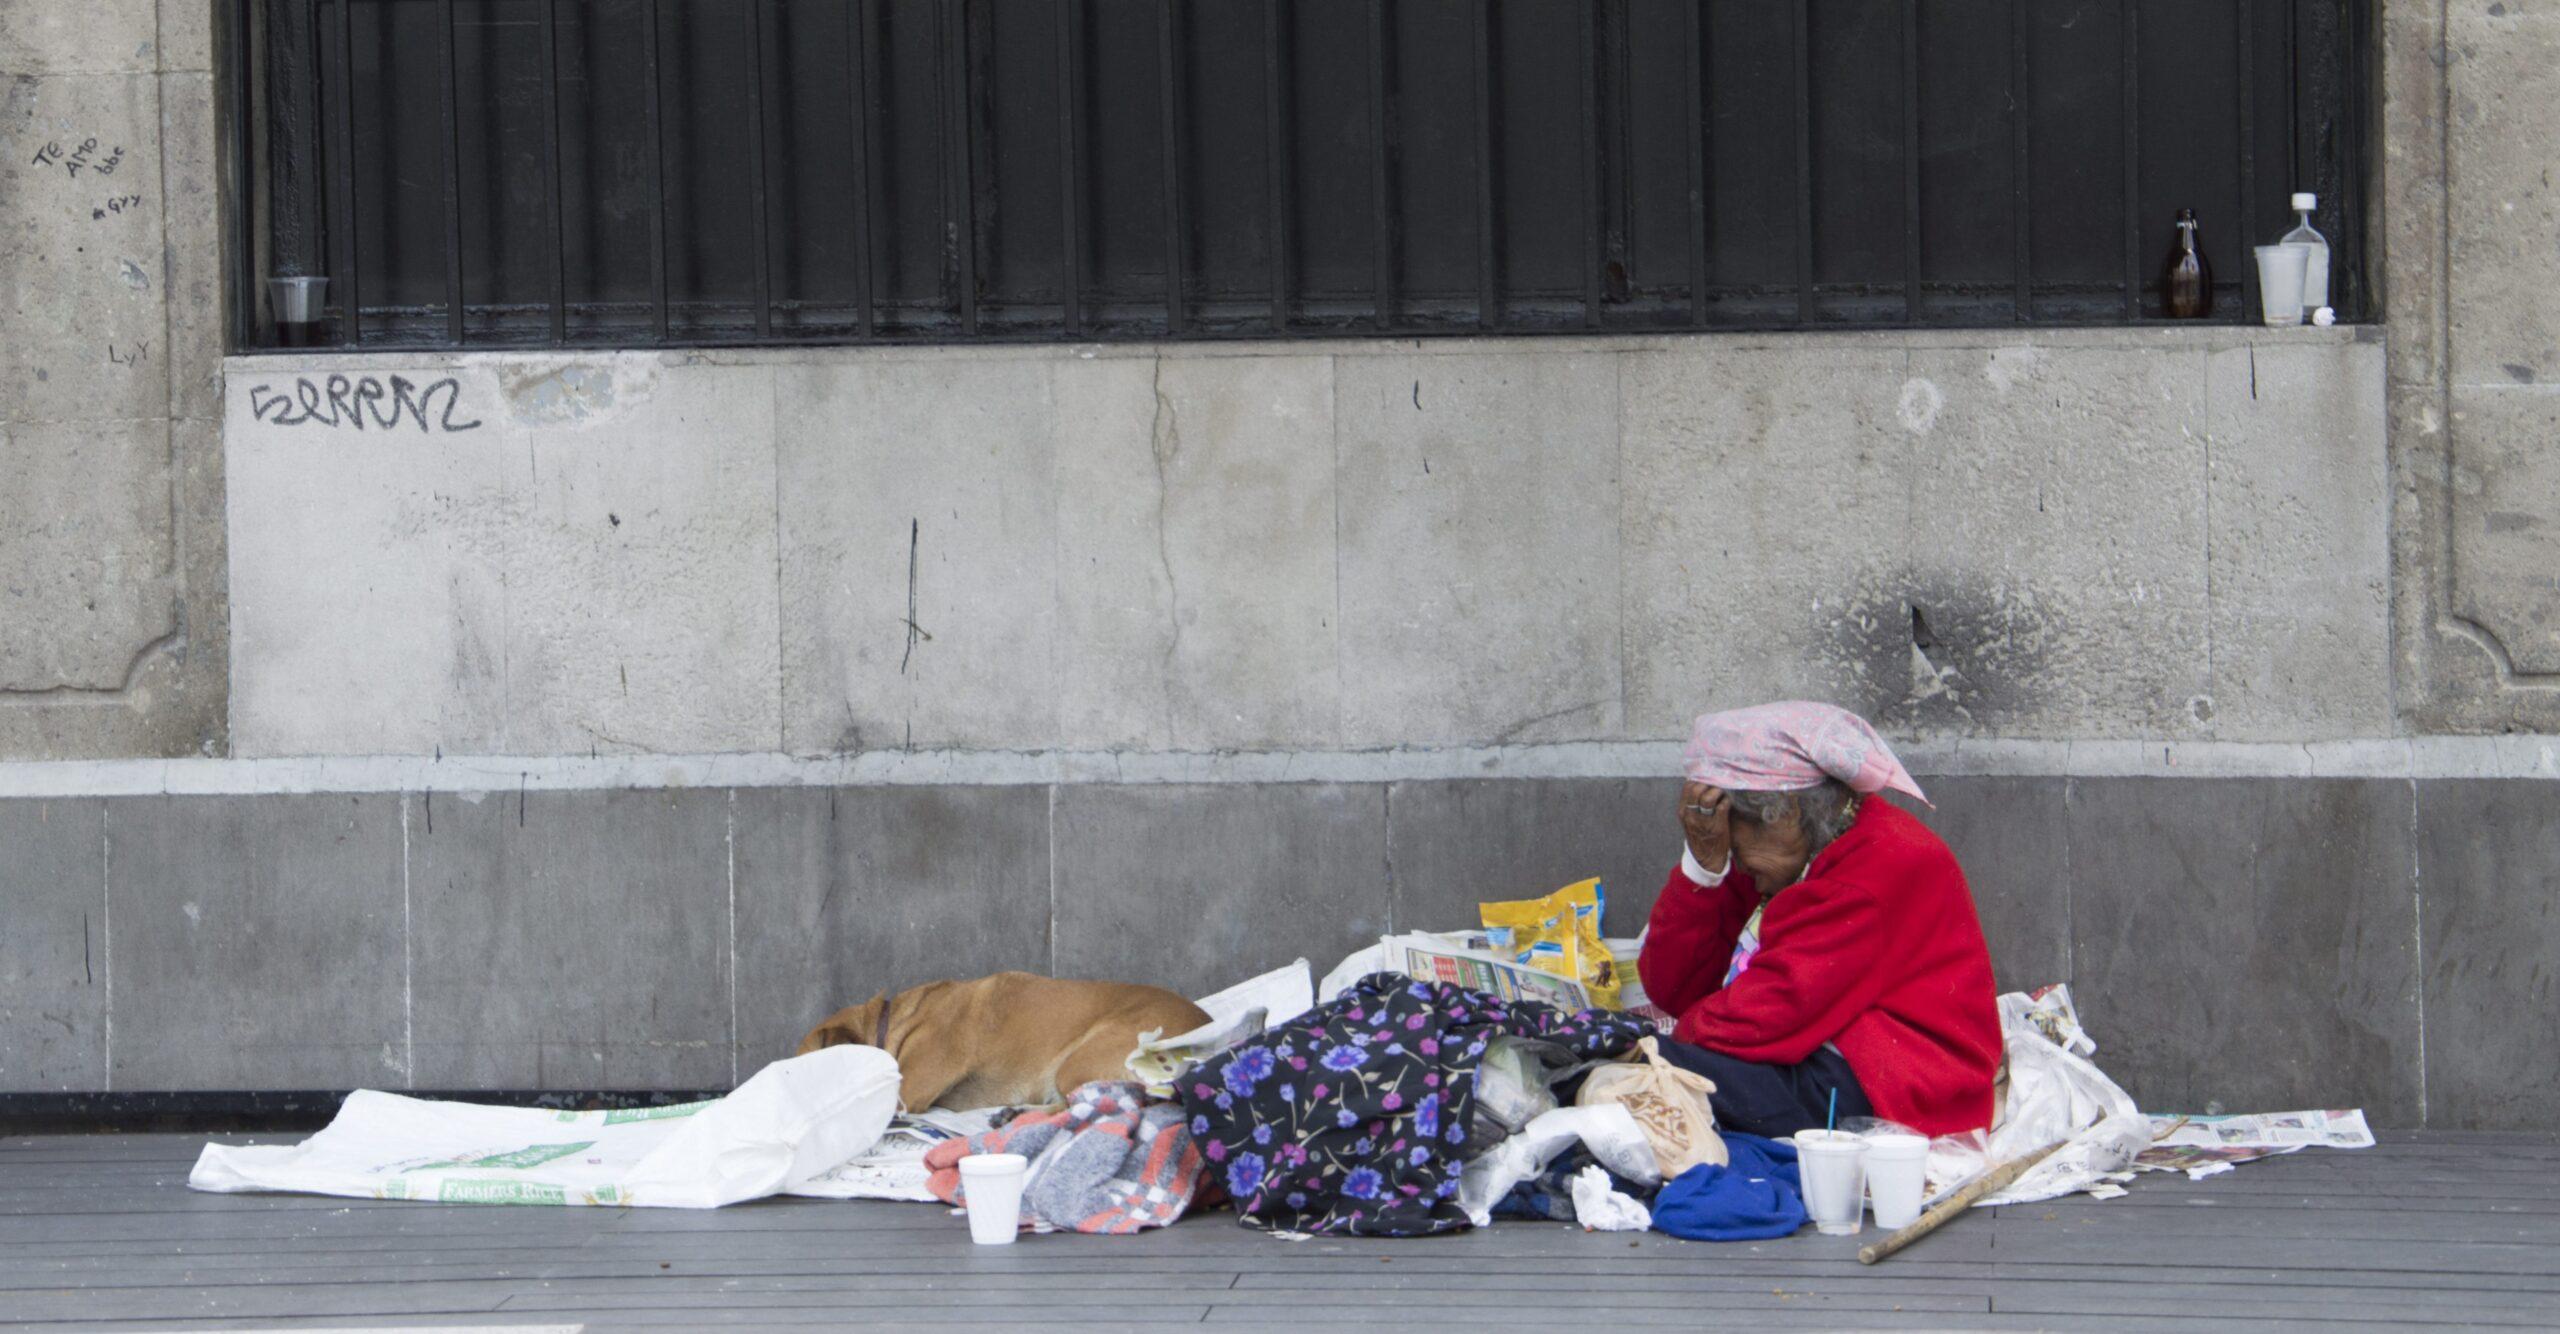 Sin hogar ni identidad: estos son los estigmas que sufren las mujeres que viven en las calles